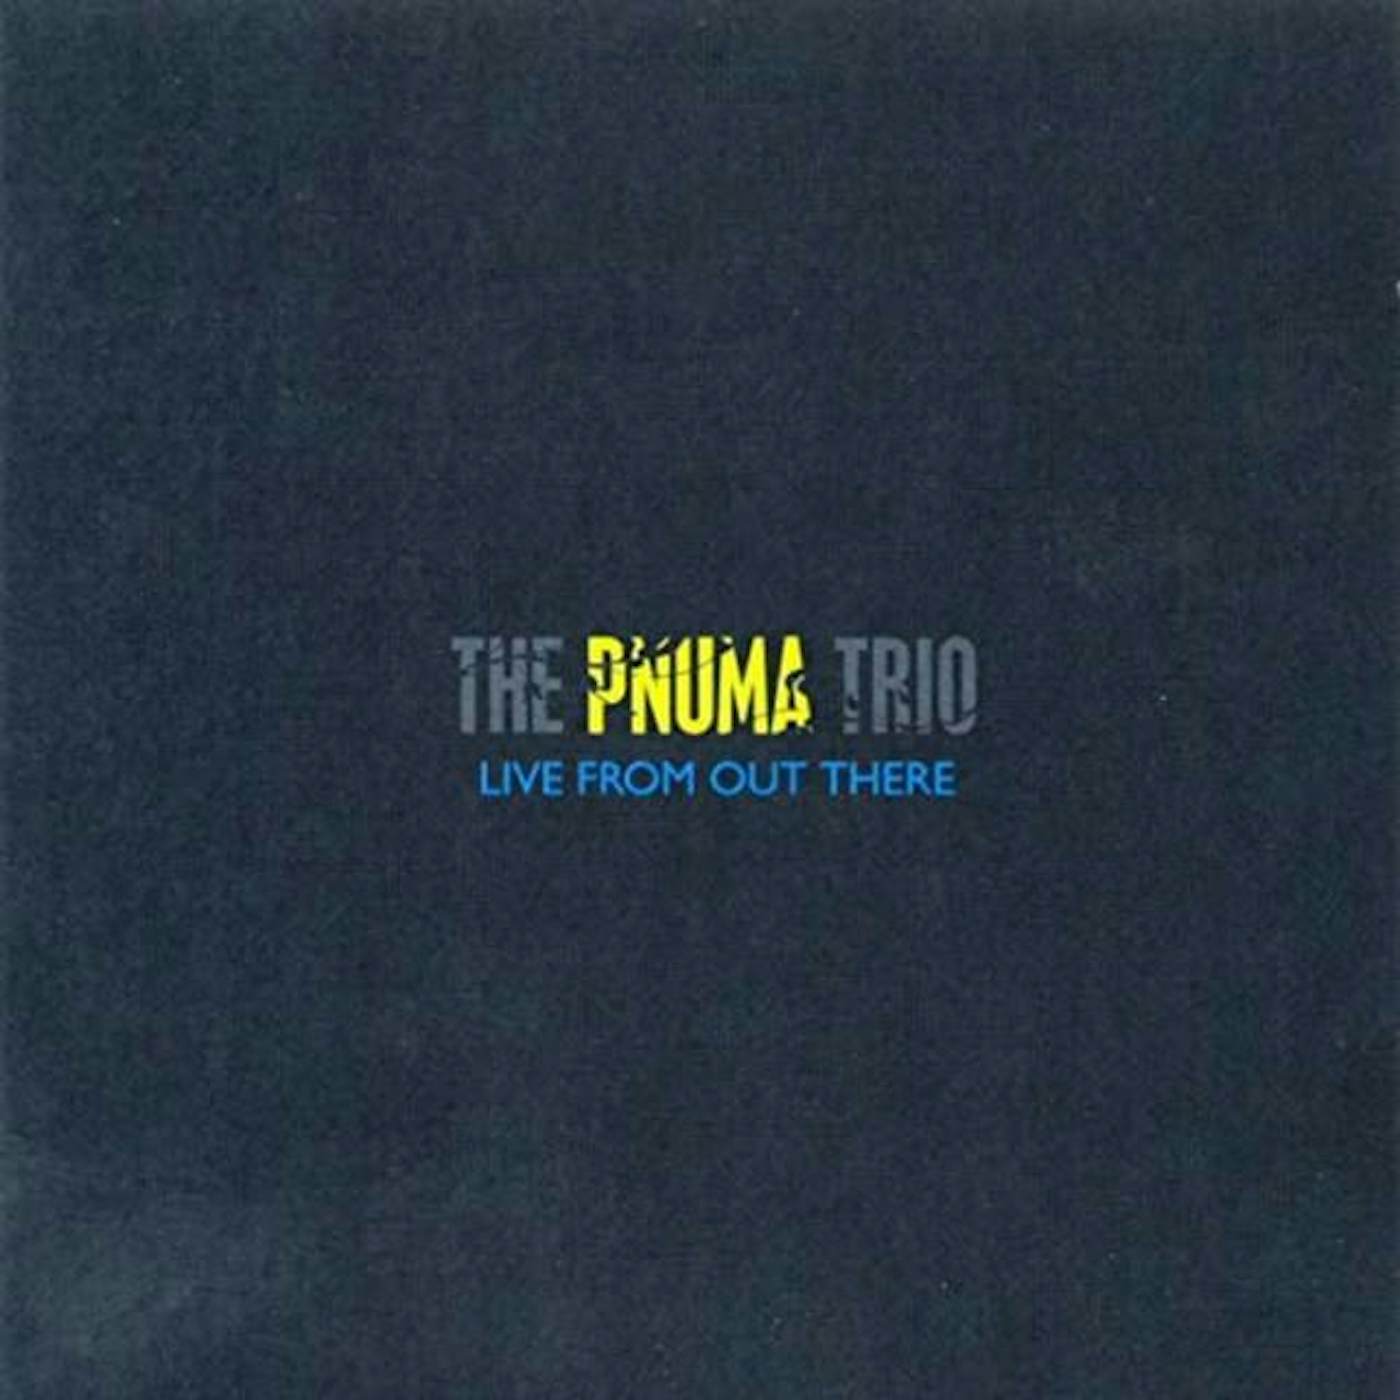 The Pnuma Trio